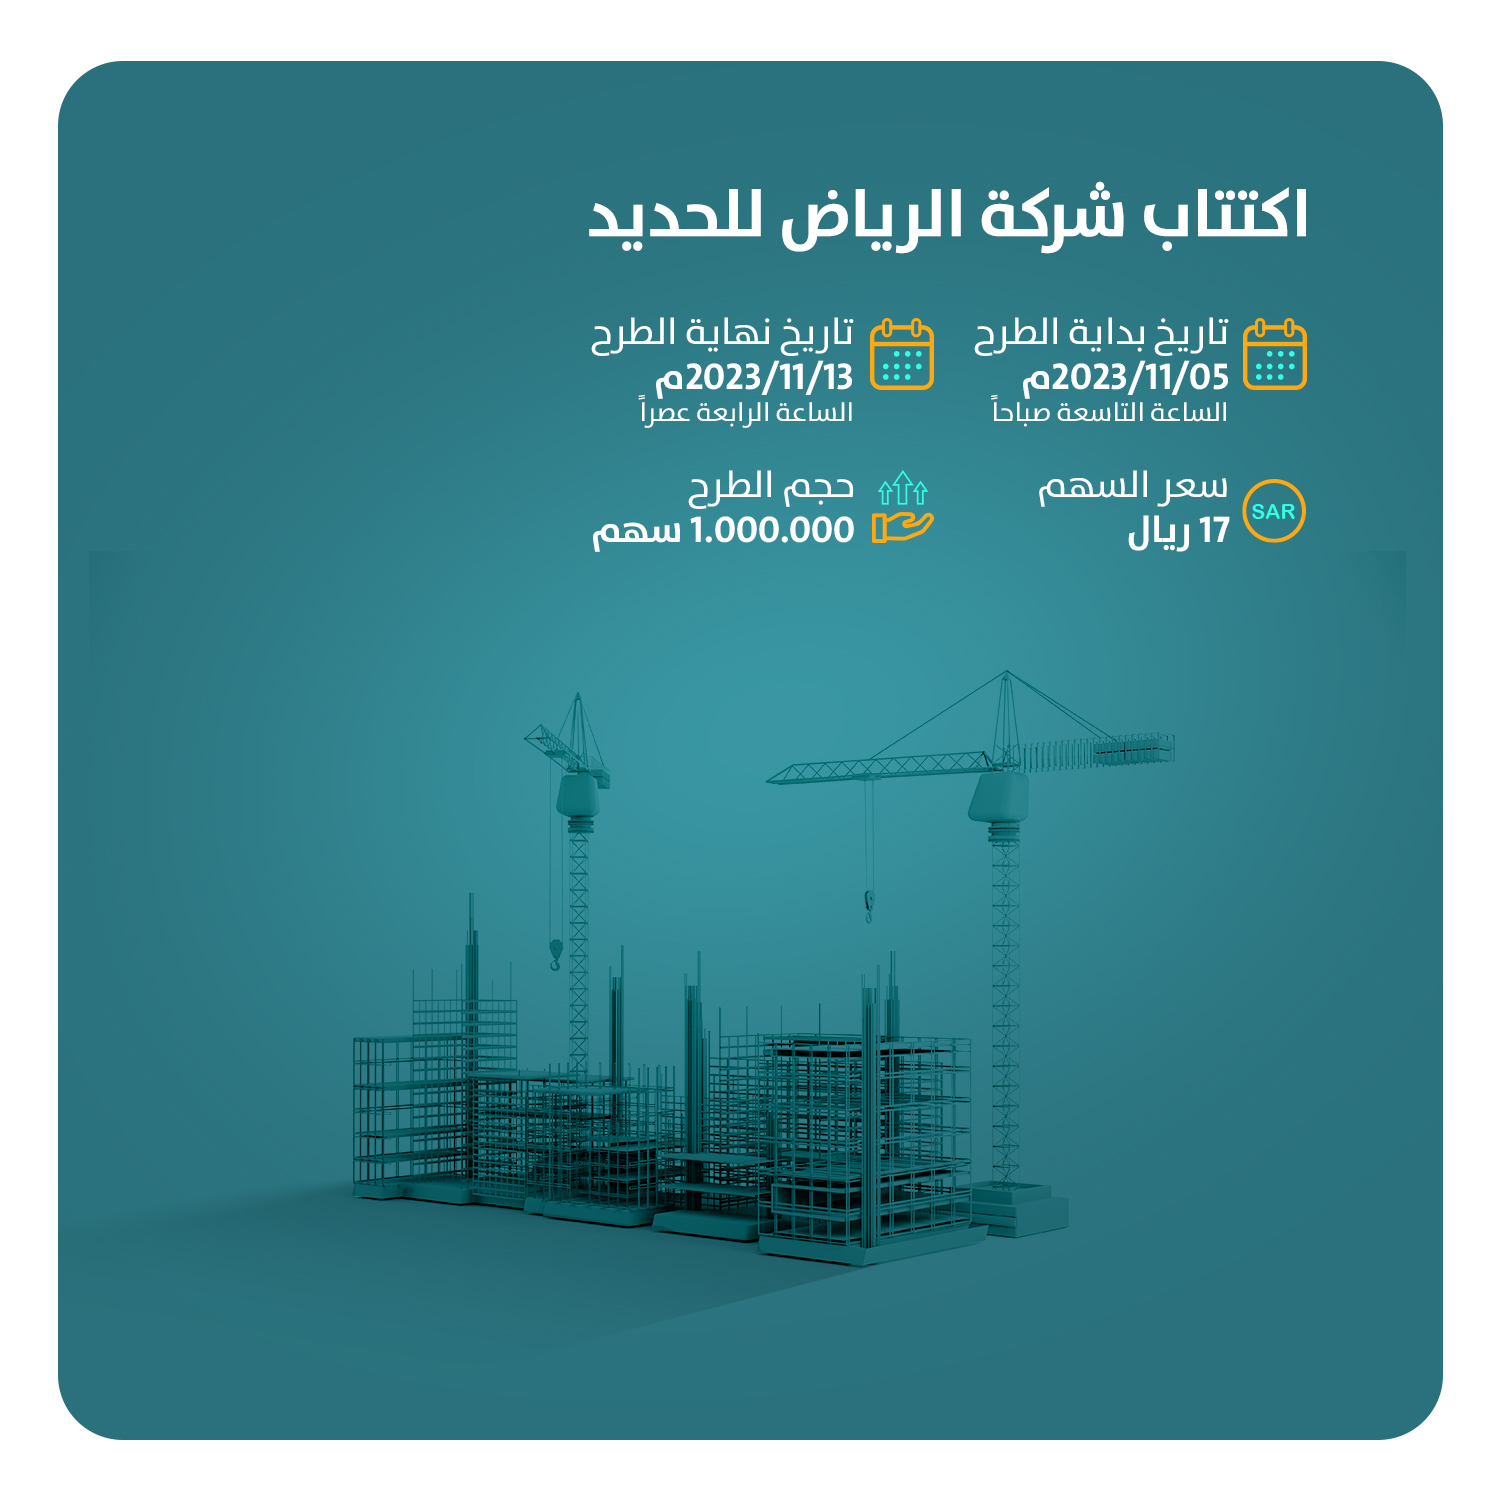 تعلن الإنماء للاستثمار عن موعد اكتتاب "شركة الرياض للحديد" في السوق الموازية (نمو)، اعتباراً من يوم الأحد 05-11-2023م حتى يوم الاثنين 13-11-2023م.